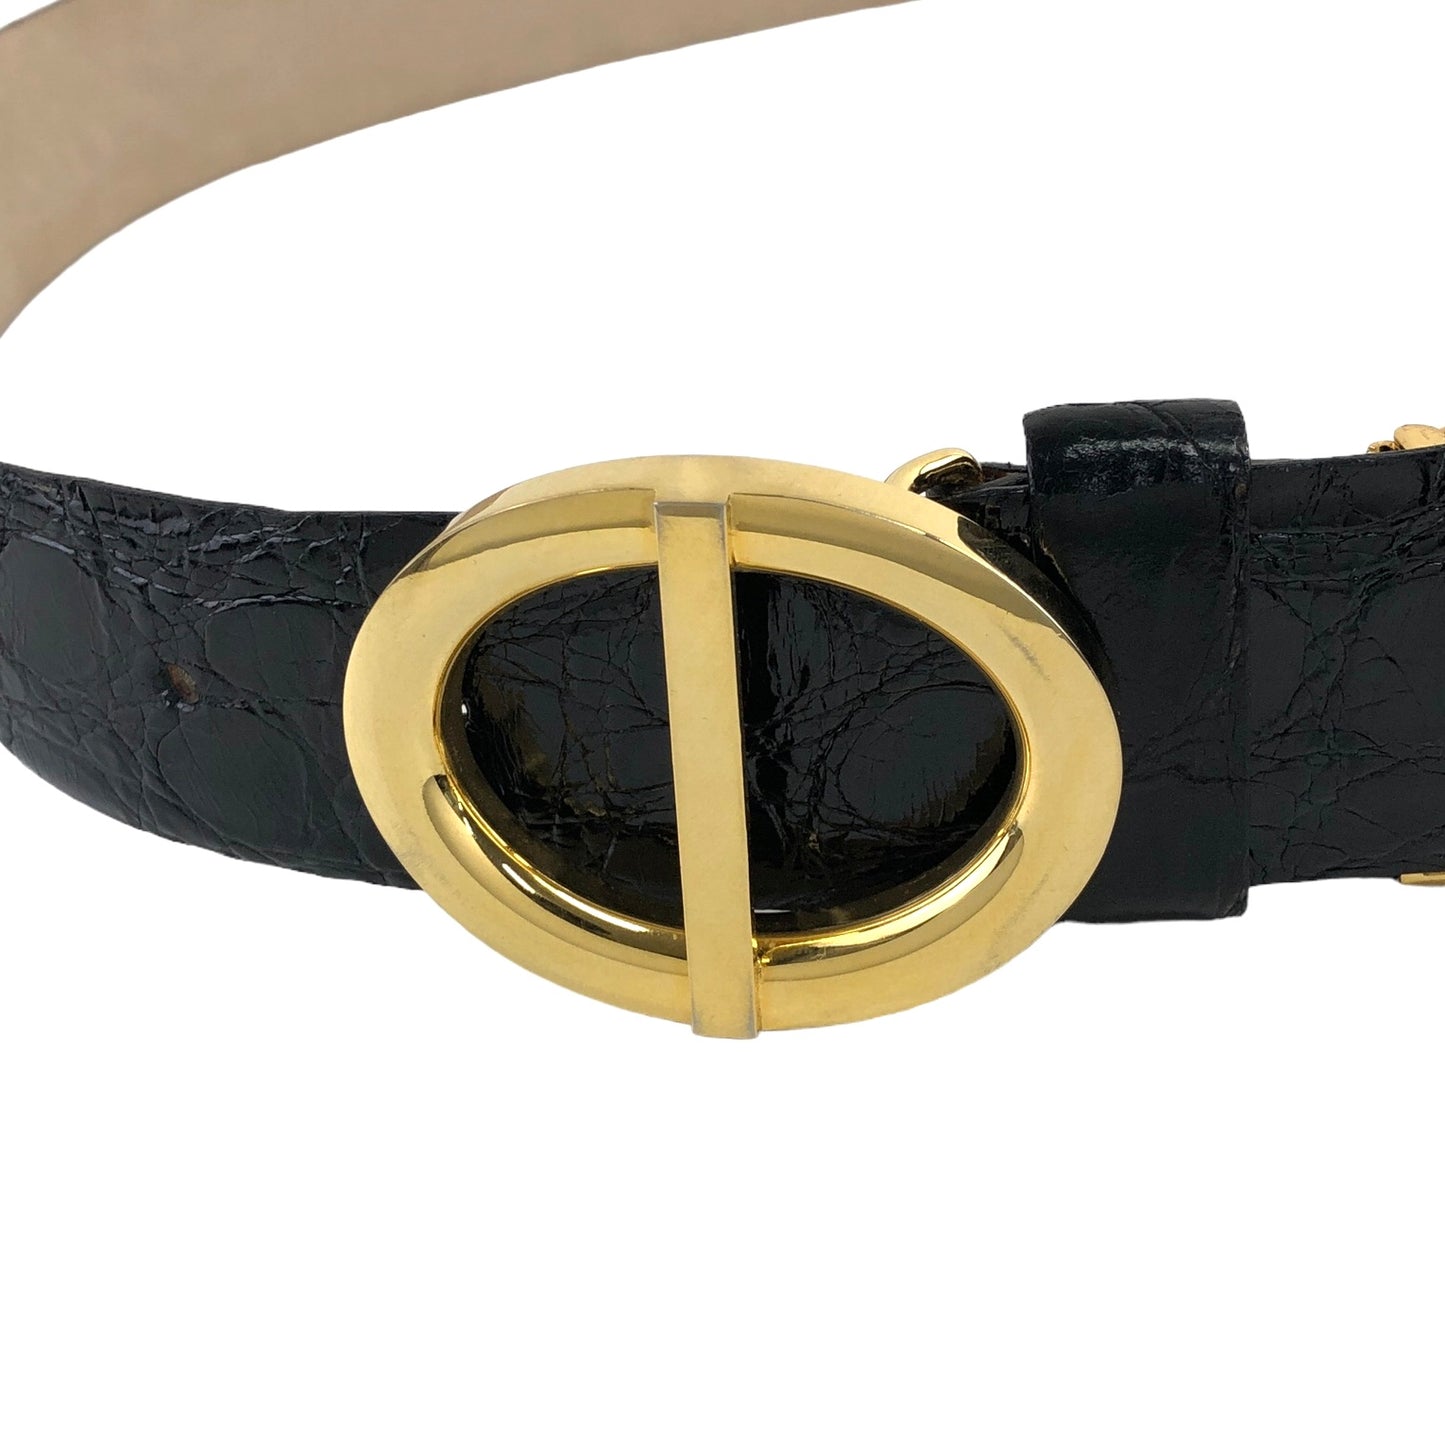 Christian Dior Buckle Leather Belt Black,Gold Vintage 3yfefk